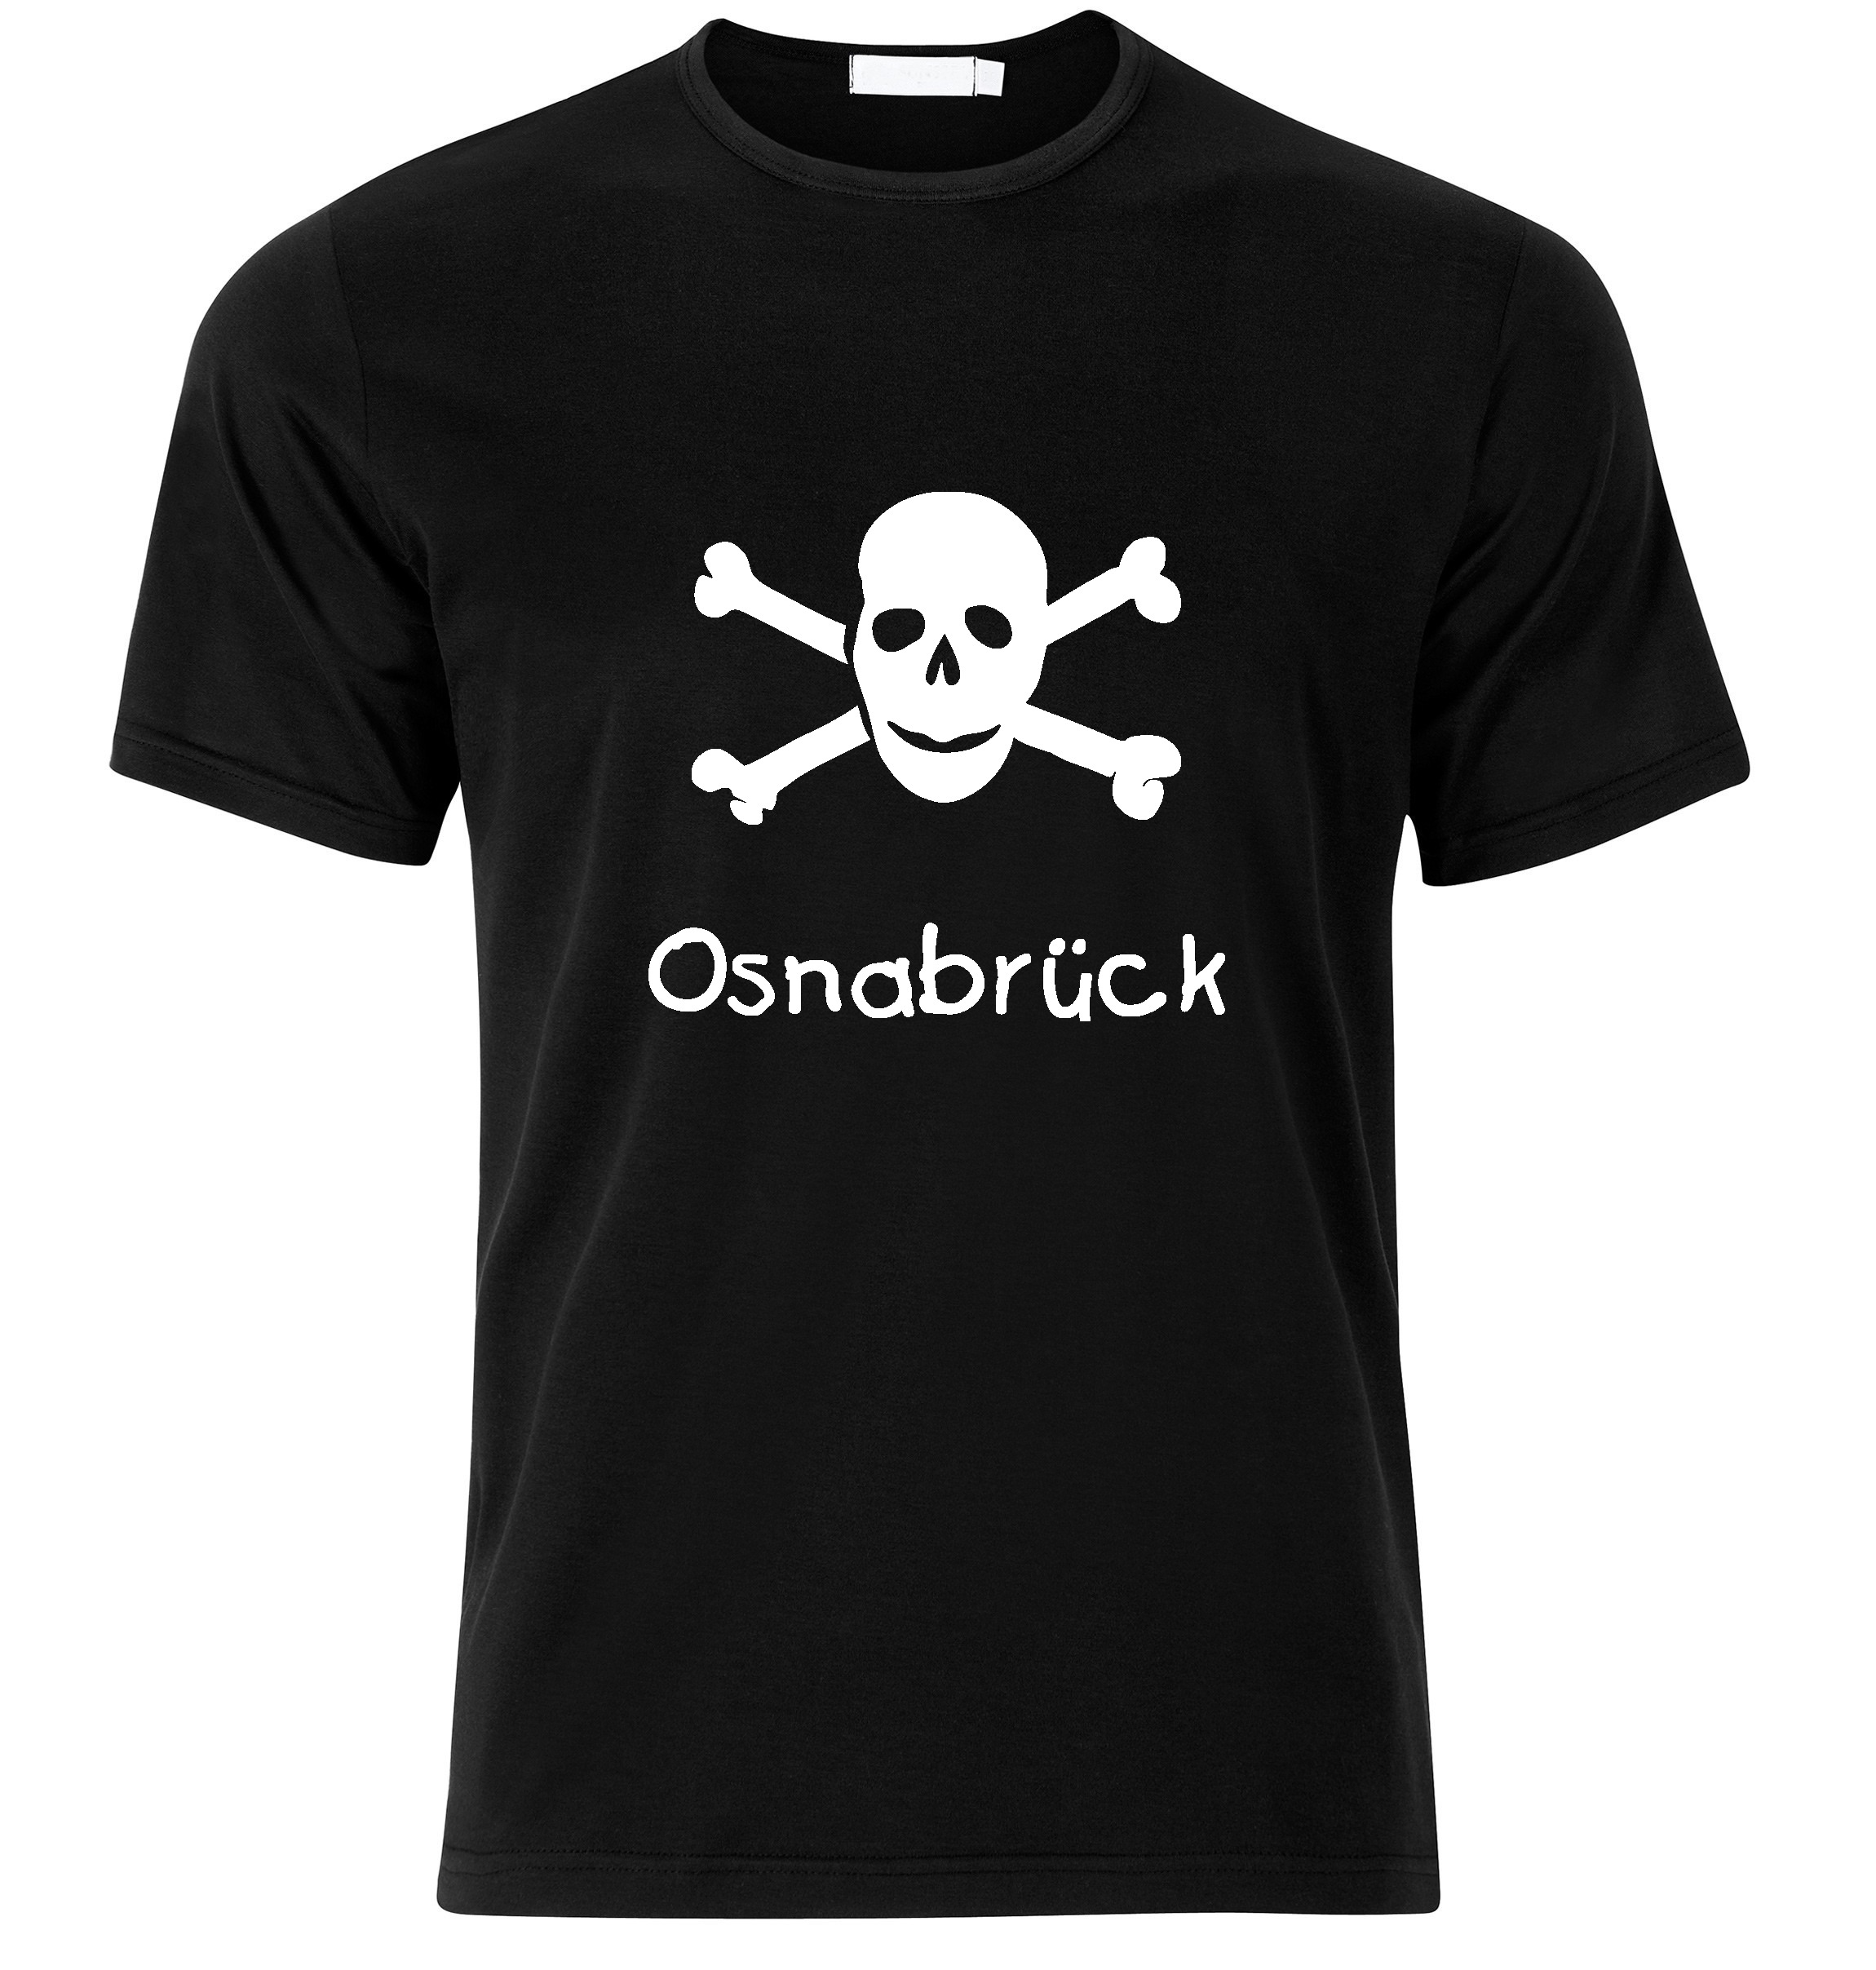 T-Shirt Osnabrück Jolly Roger, Totenkopf